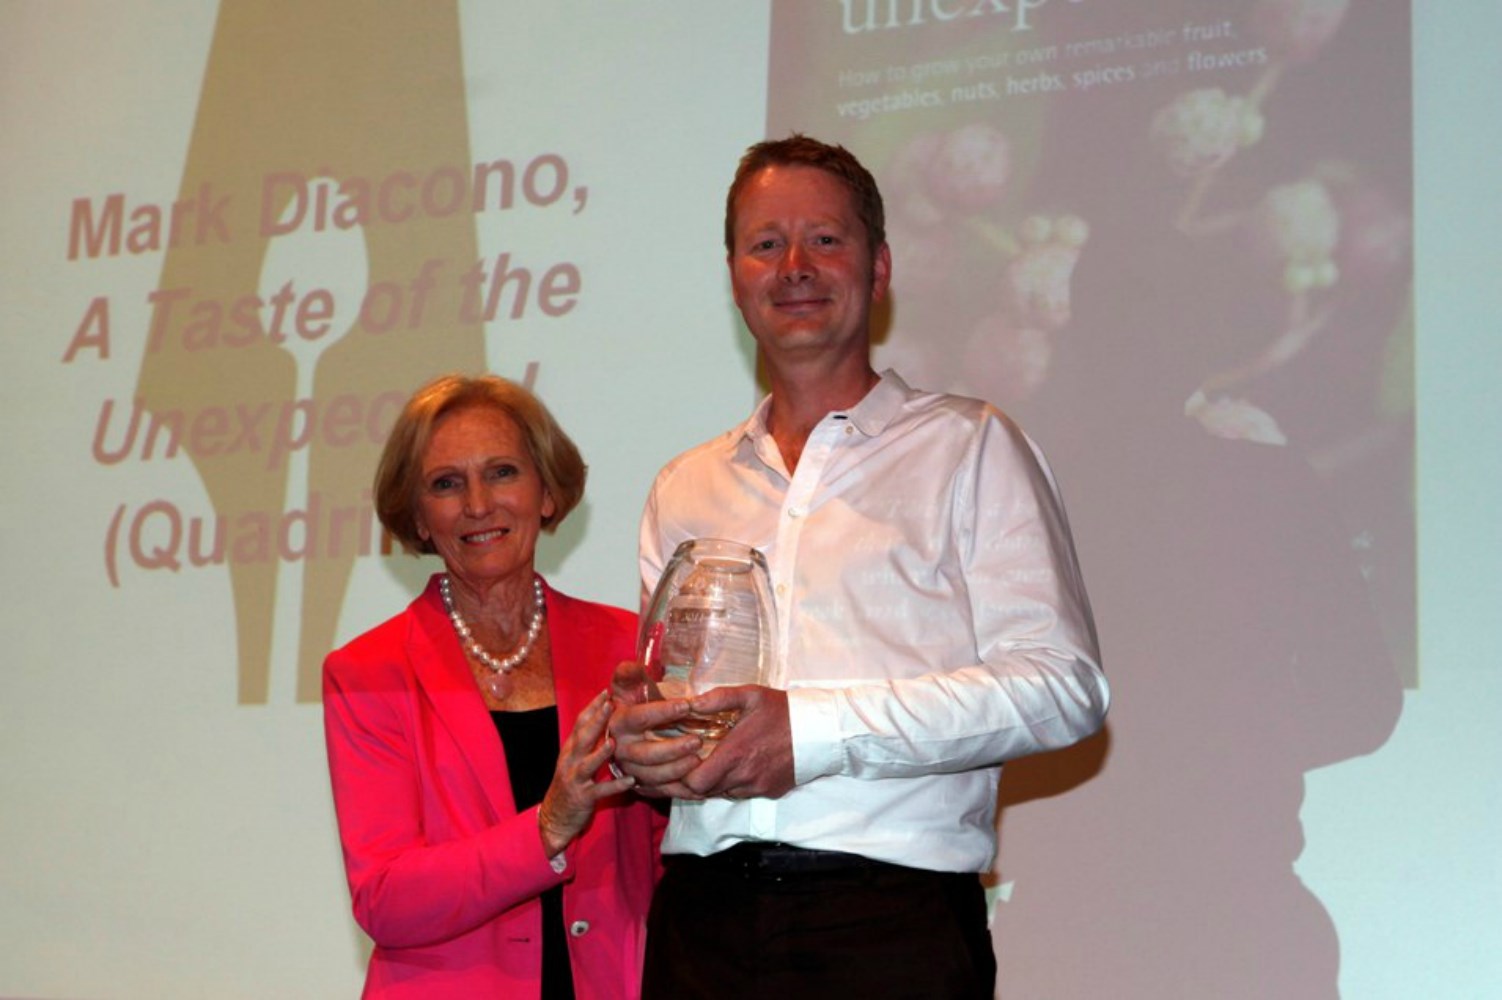 Mark Diacono receiving his award from Mary Berry